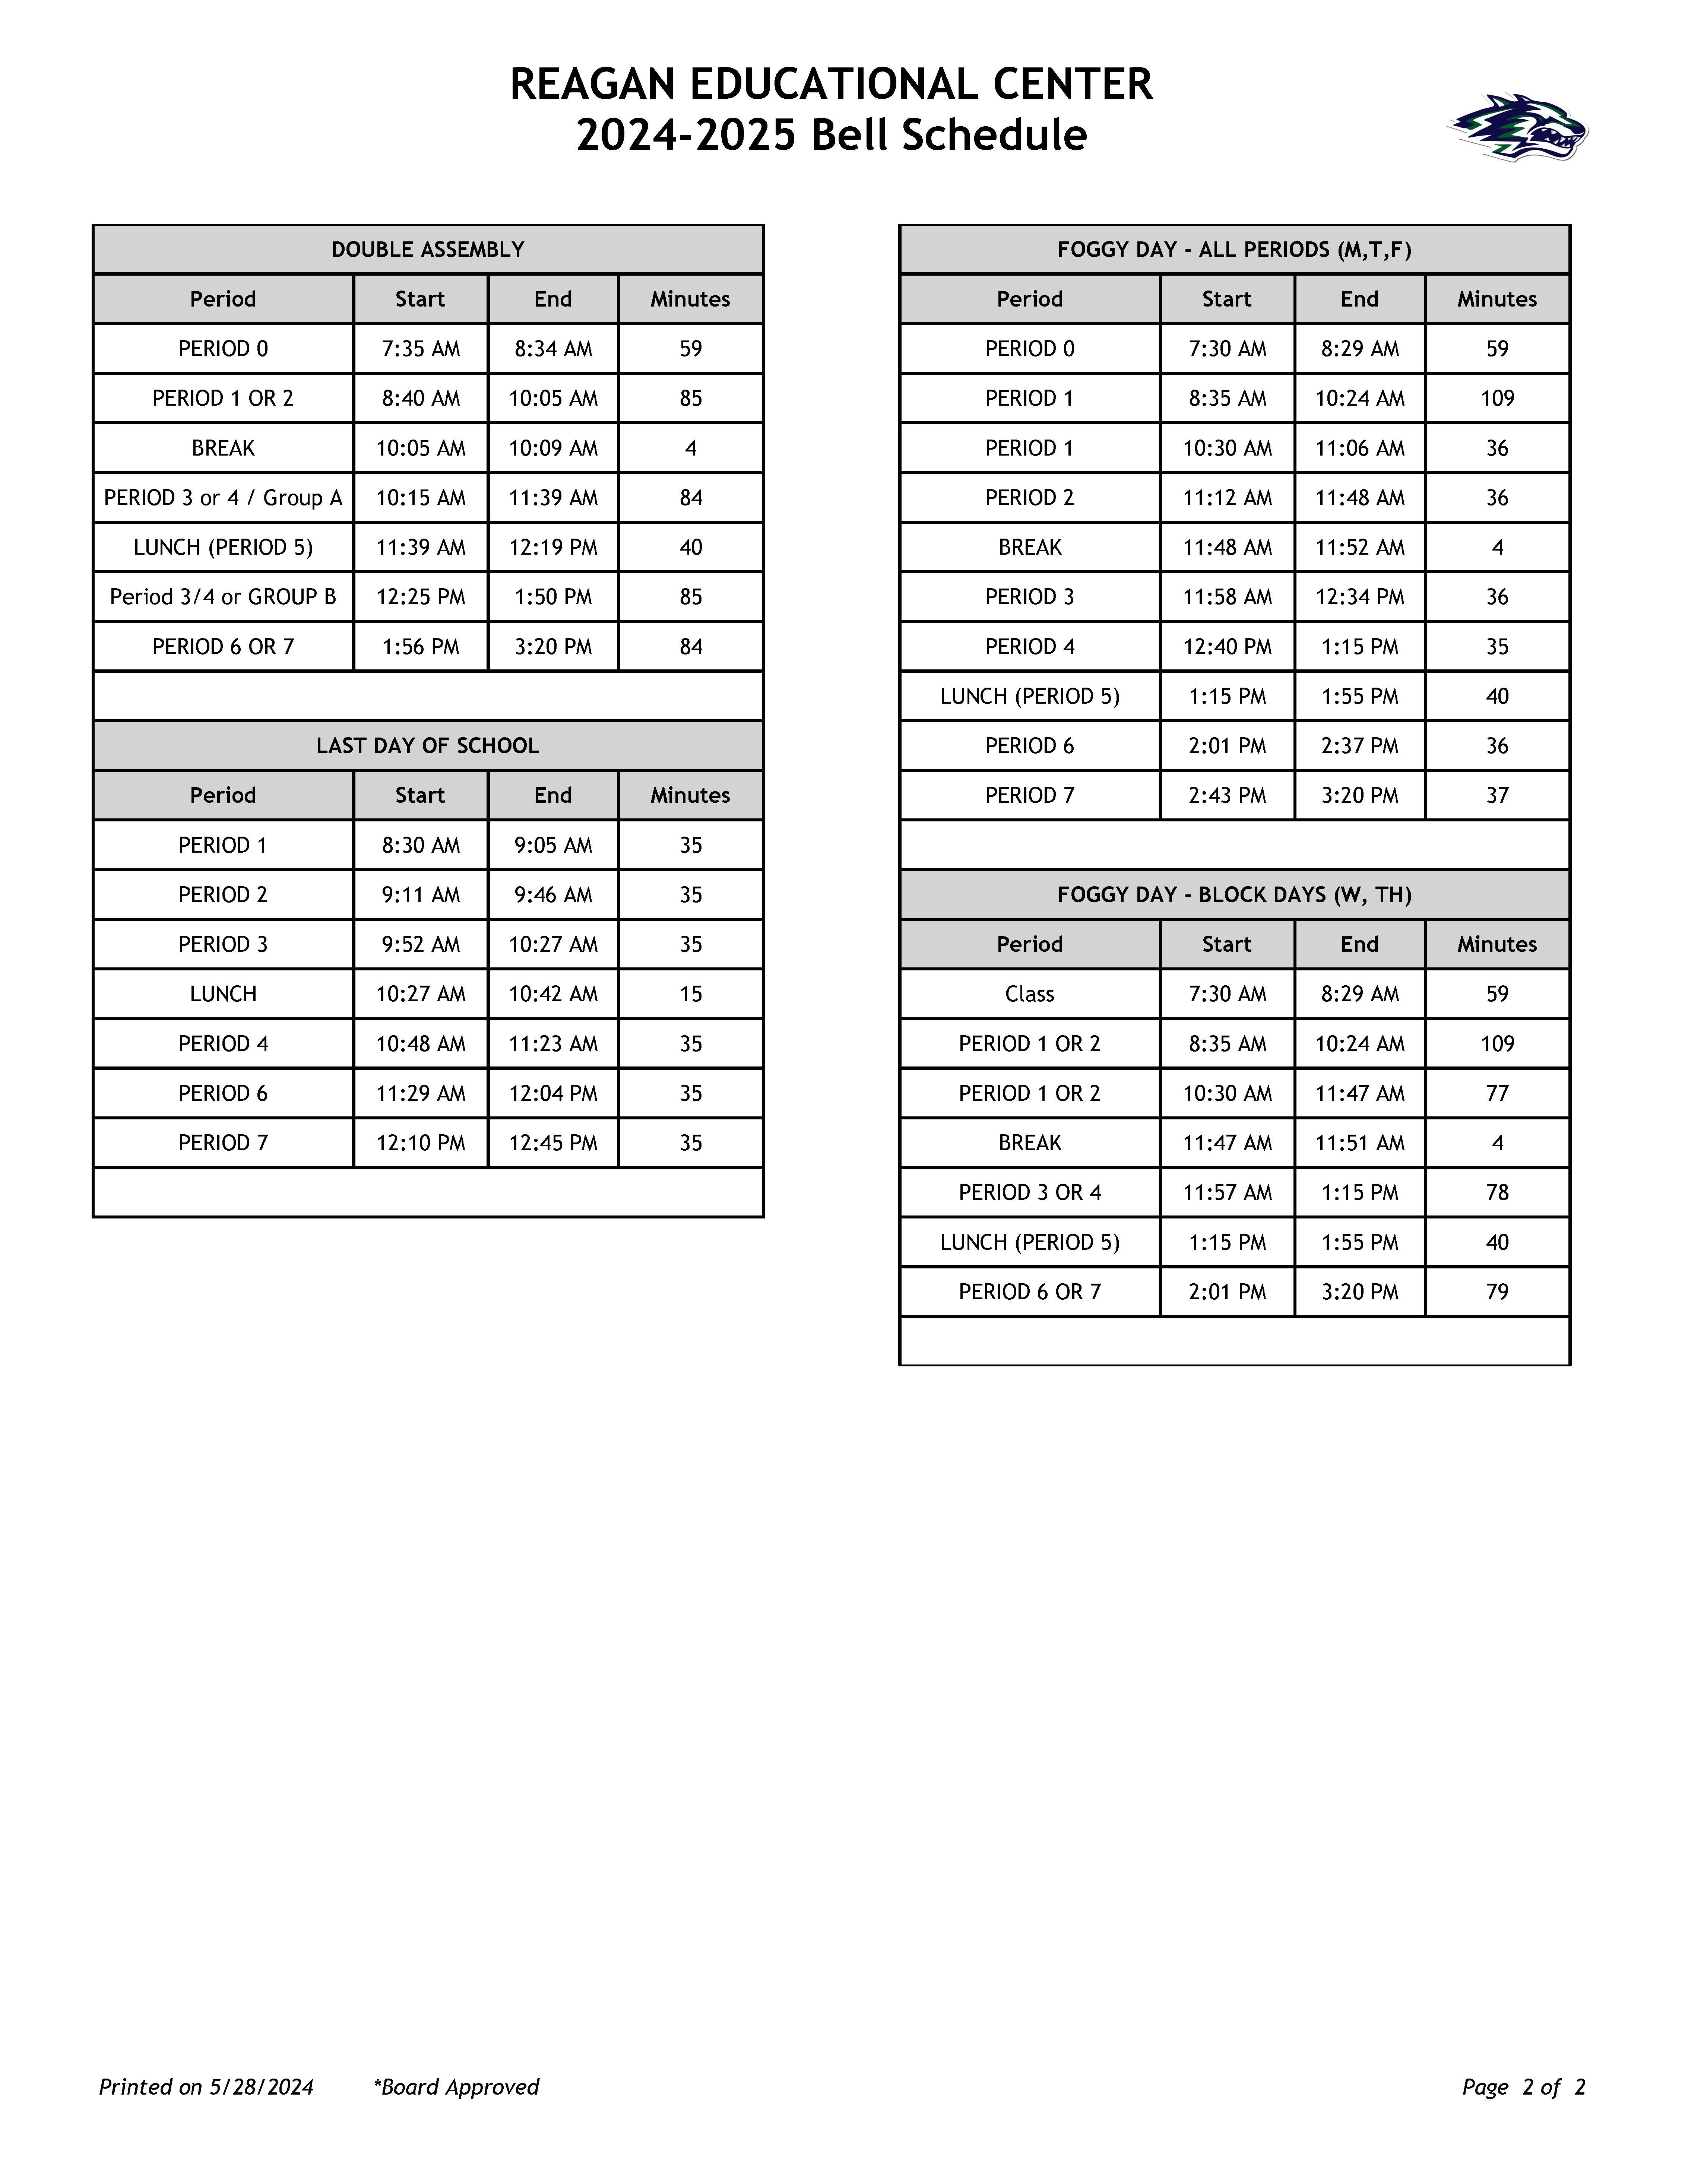 REC Bell Schedule 